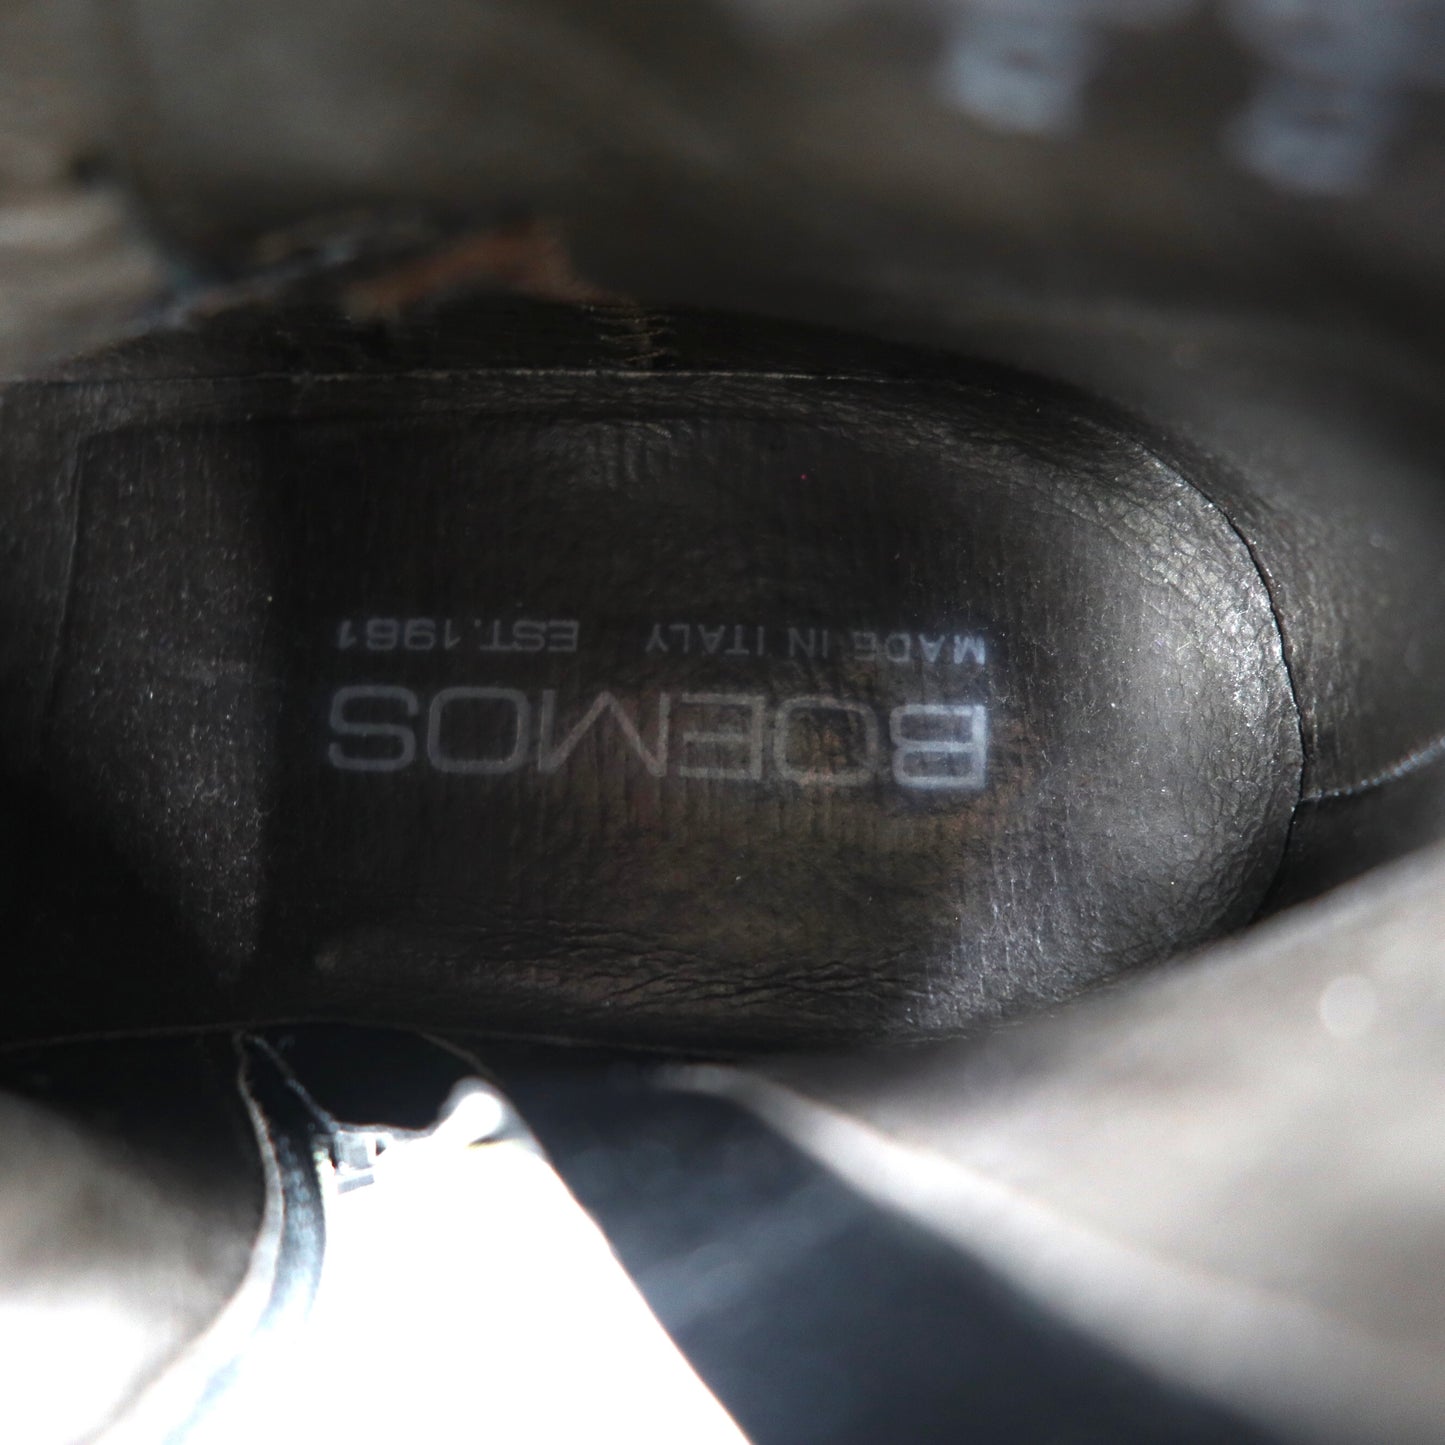 BOEMOS サイドジップブーツ ジョッパーブーツ 23cm ブラック レザー  8102 イタリア製